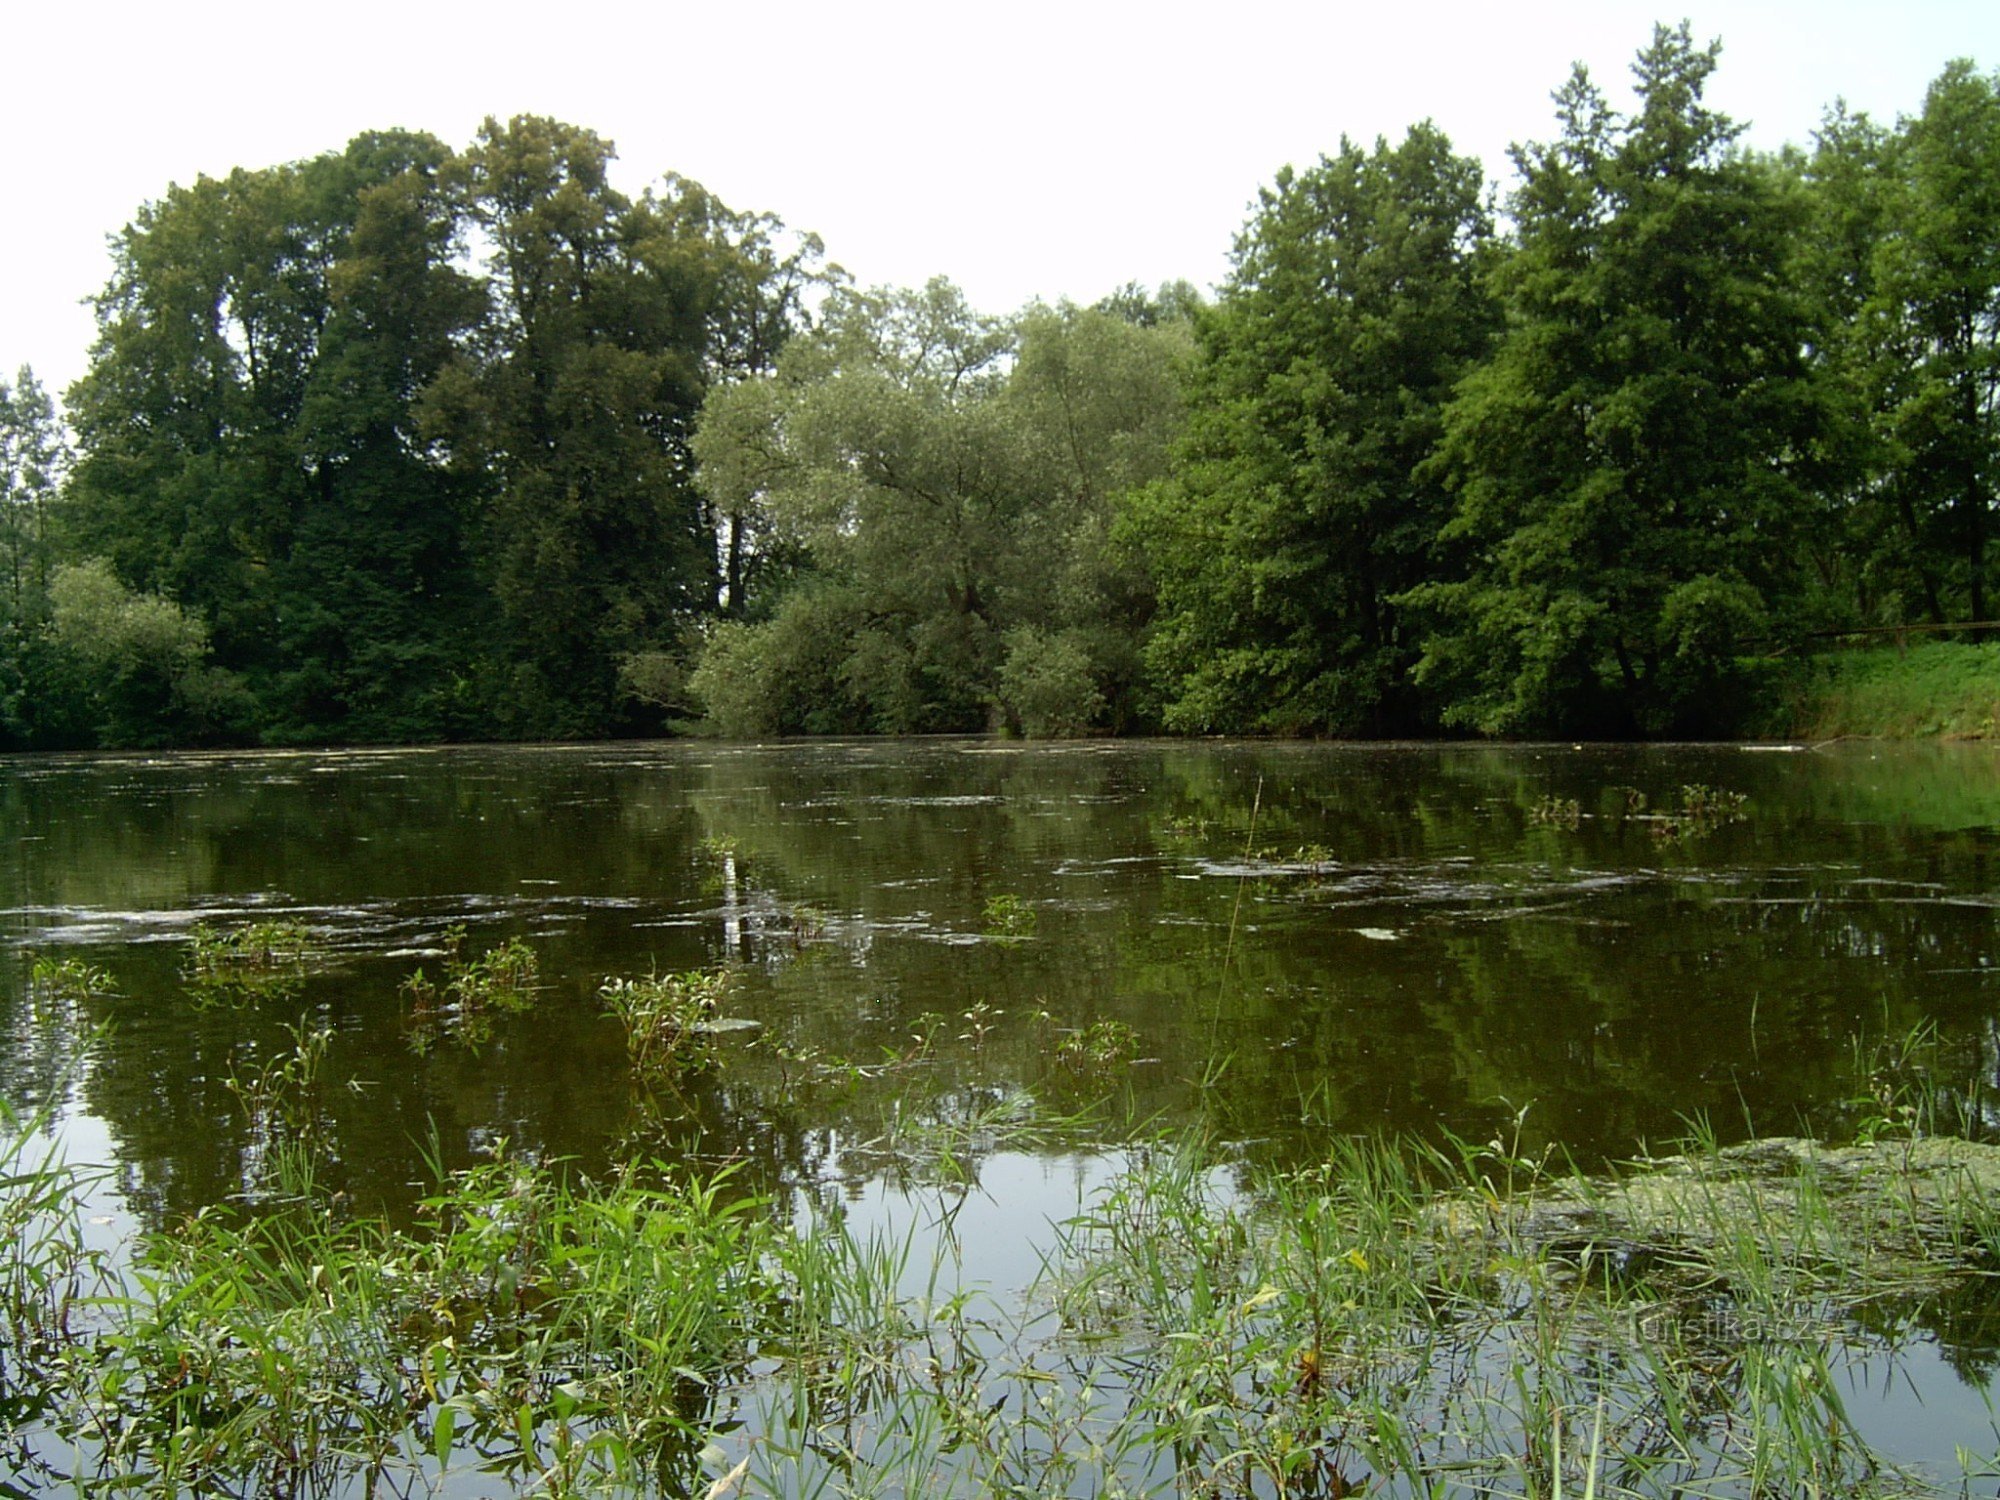 Λίμνη Jílovecký, στα αριστερά μια ομάδα αναμνηστικών φλαμουριών